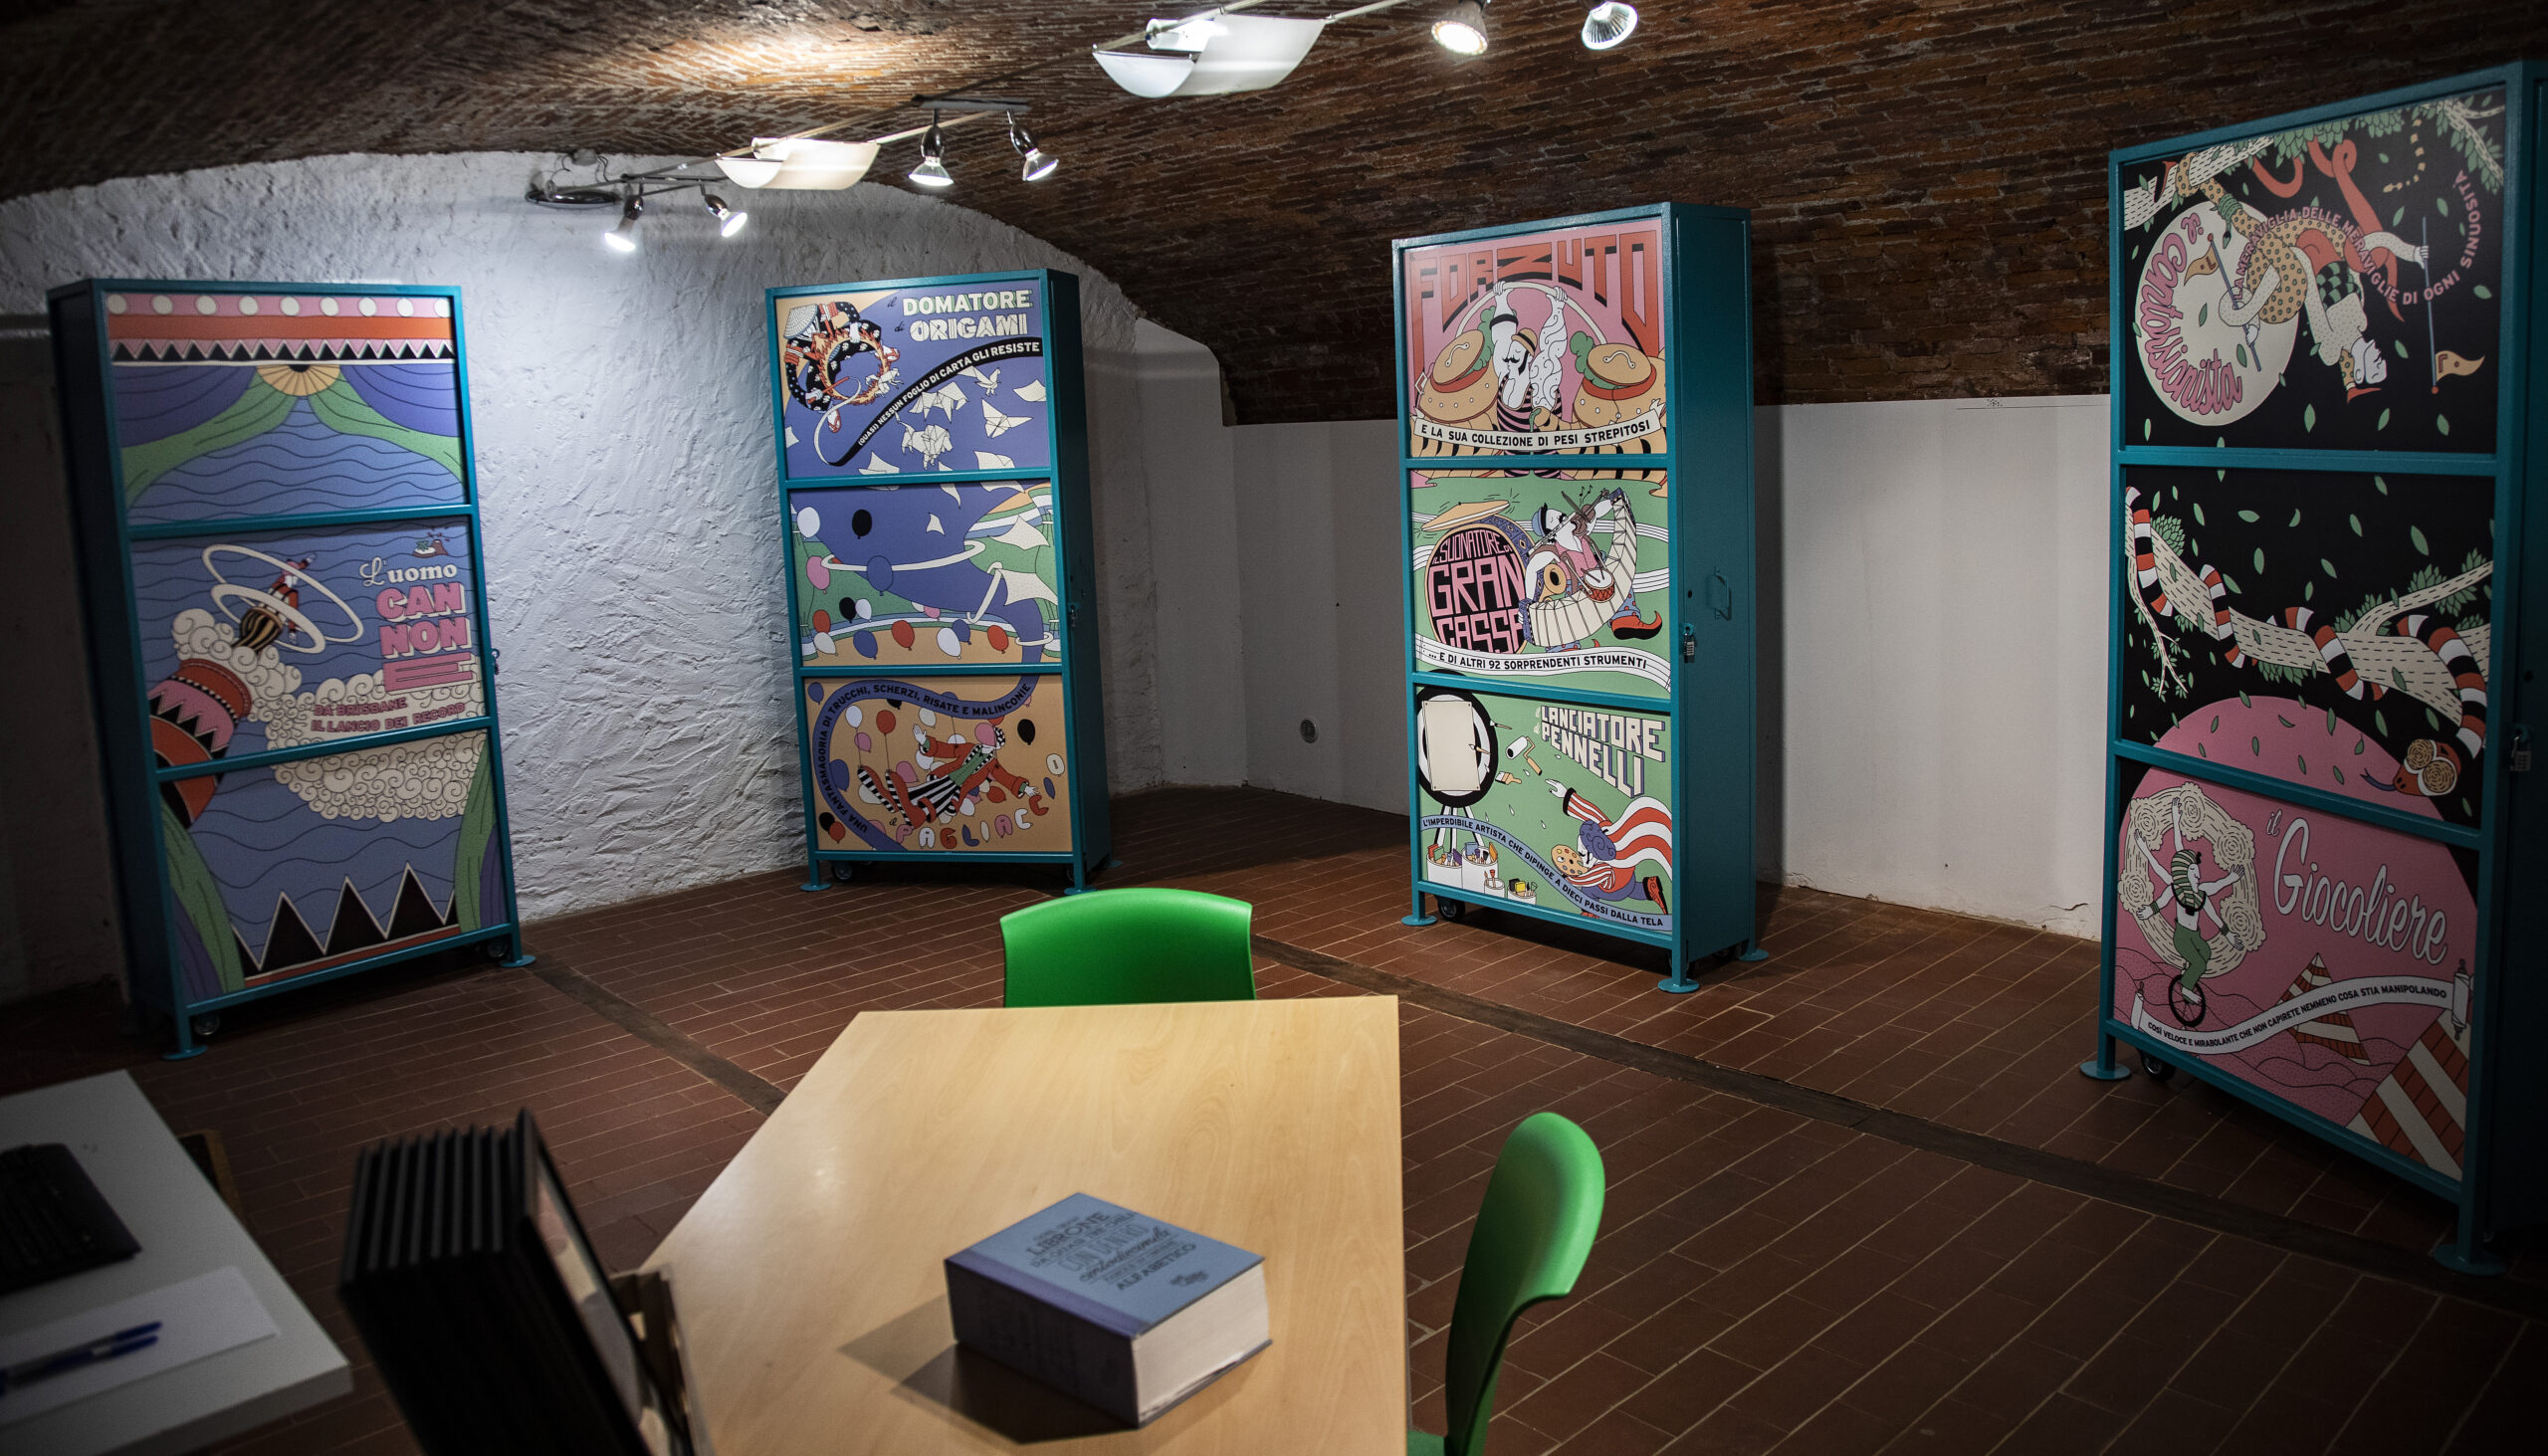 L'interno dell'escape room, decorata a tema Gianni Rodari